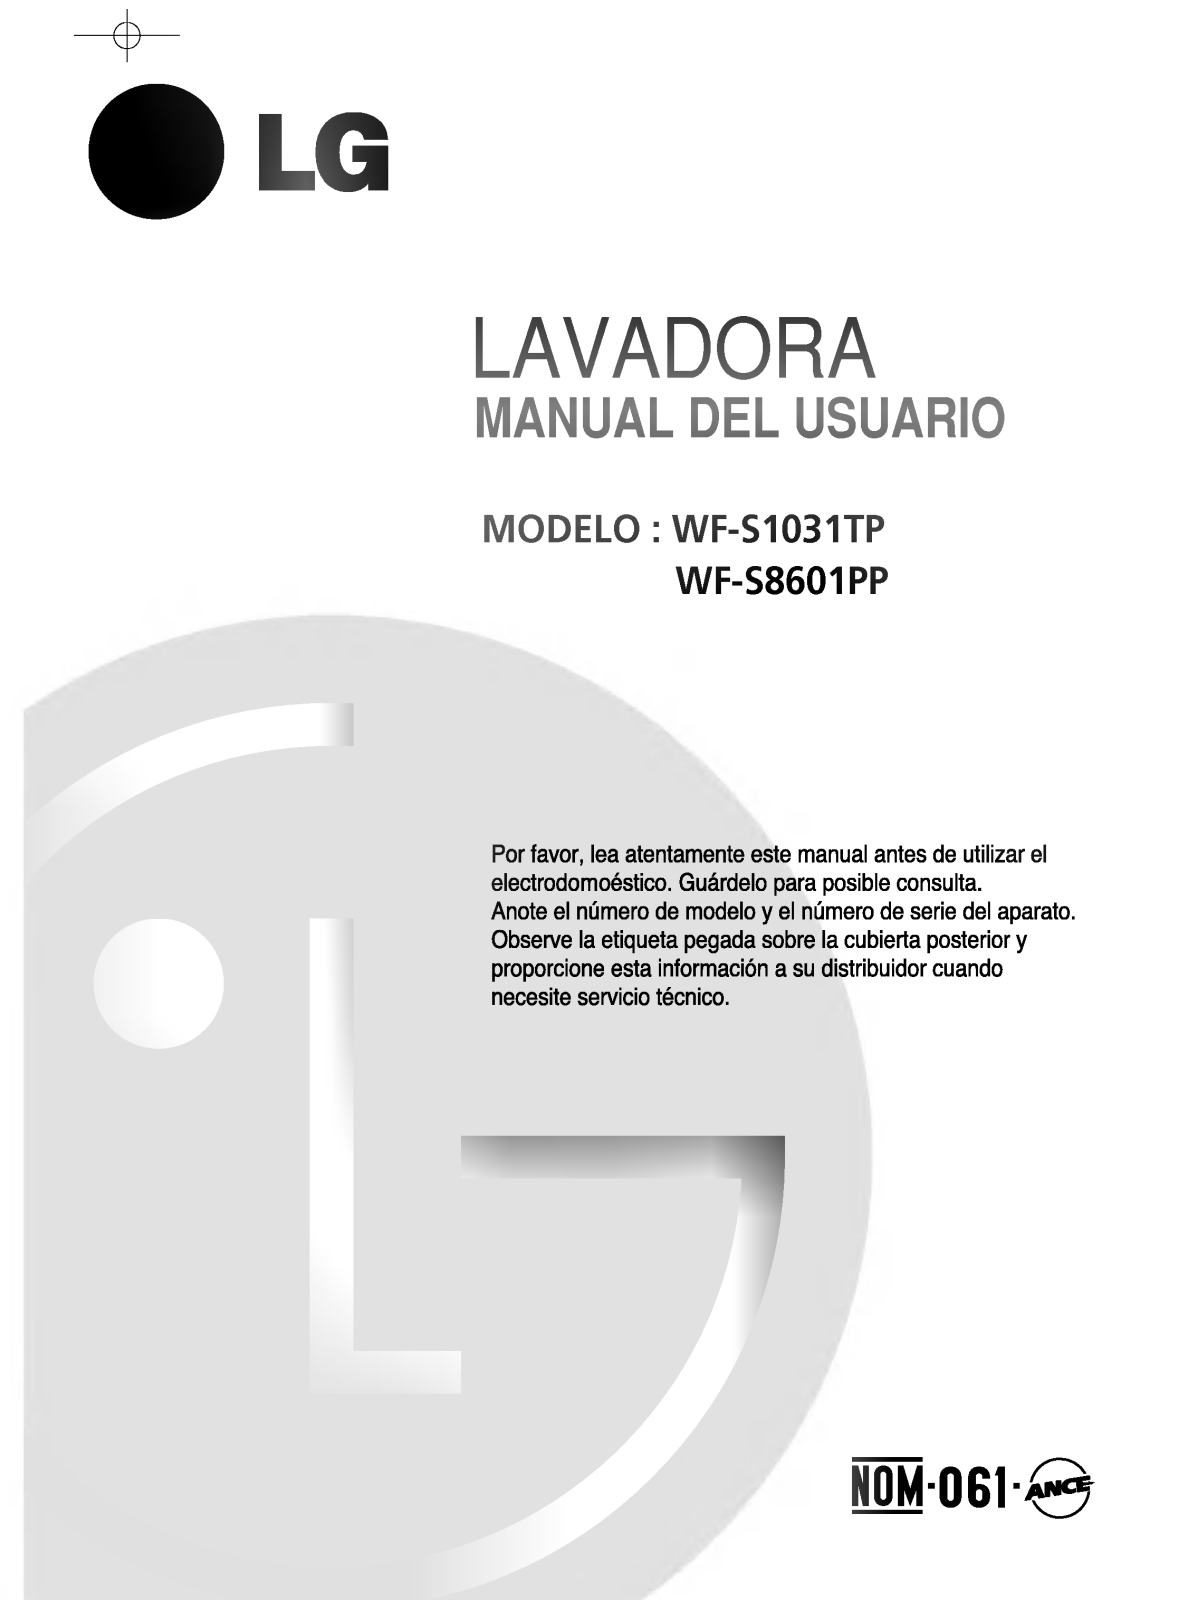 LG WF-S7608PP Owner's Manual